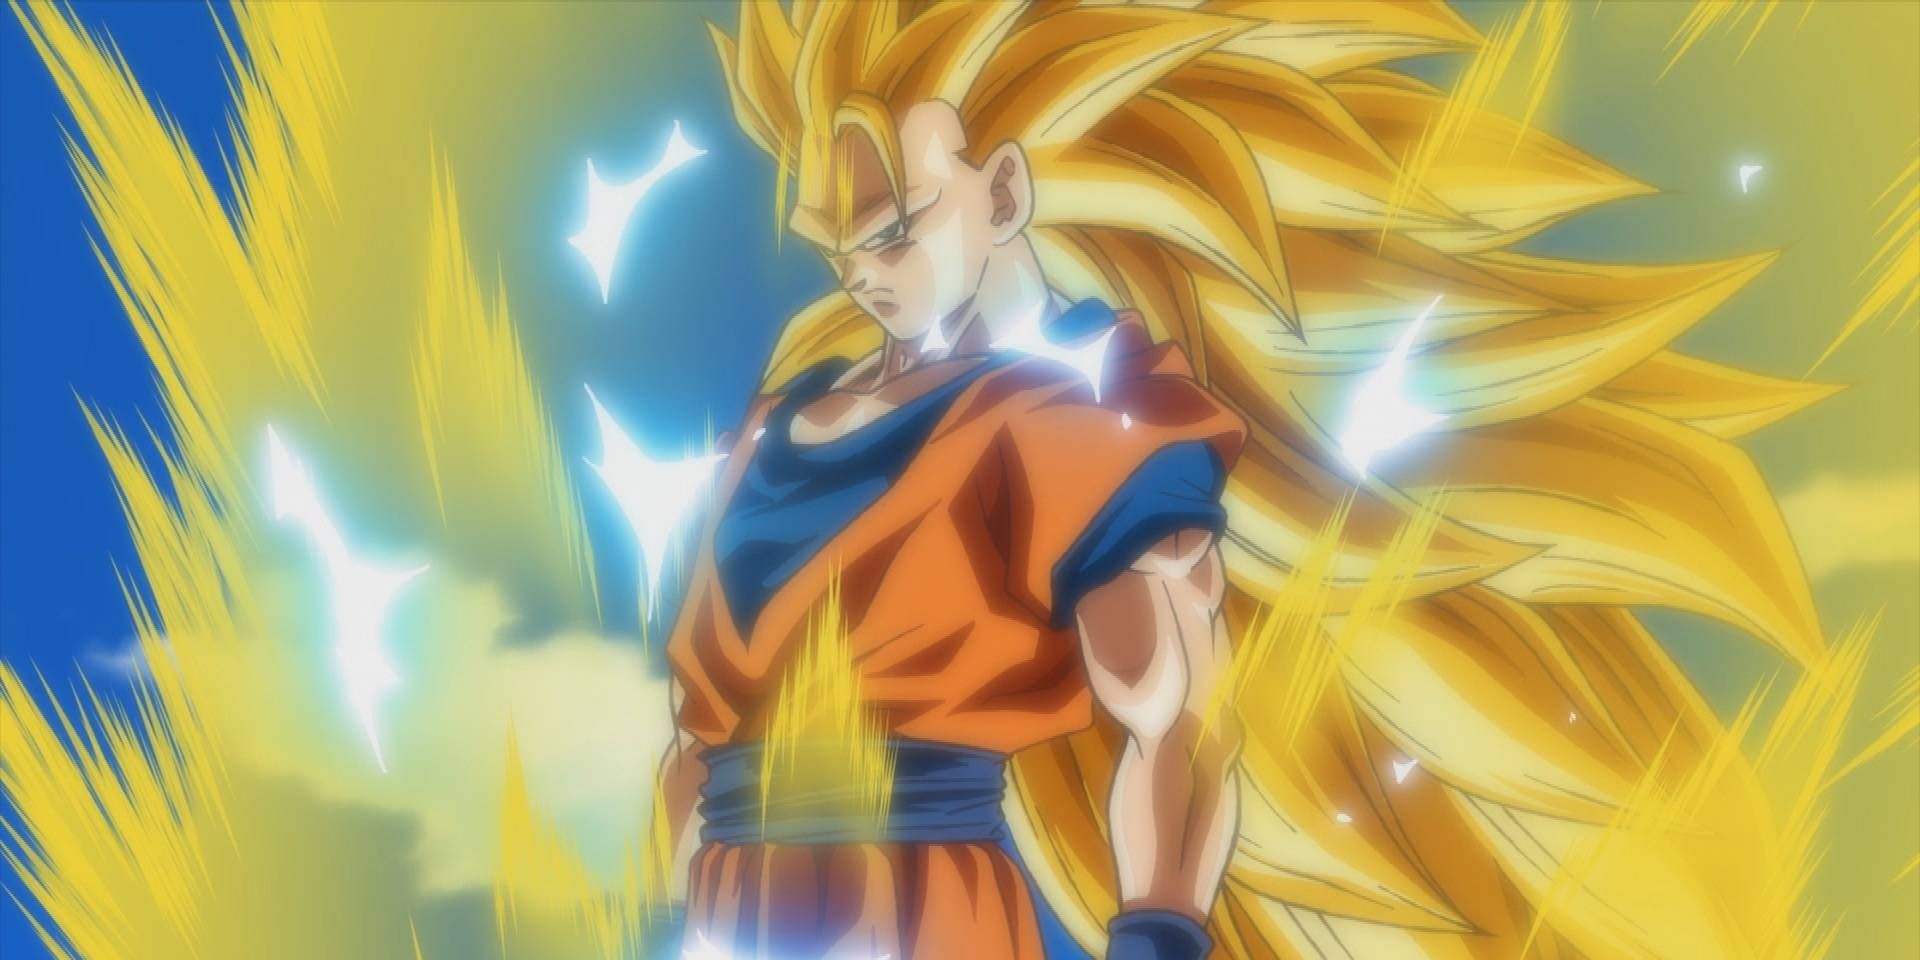 Goku transforms into a Super Saiyan 3 in Dragon Ball Super